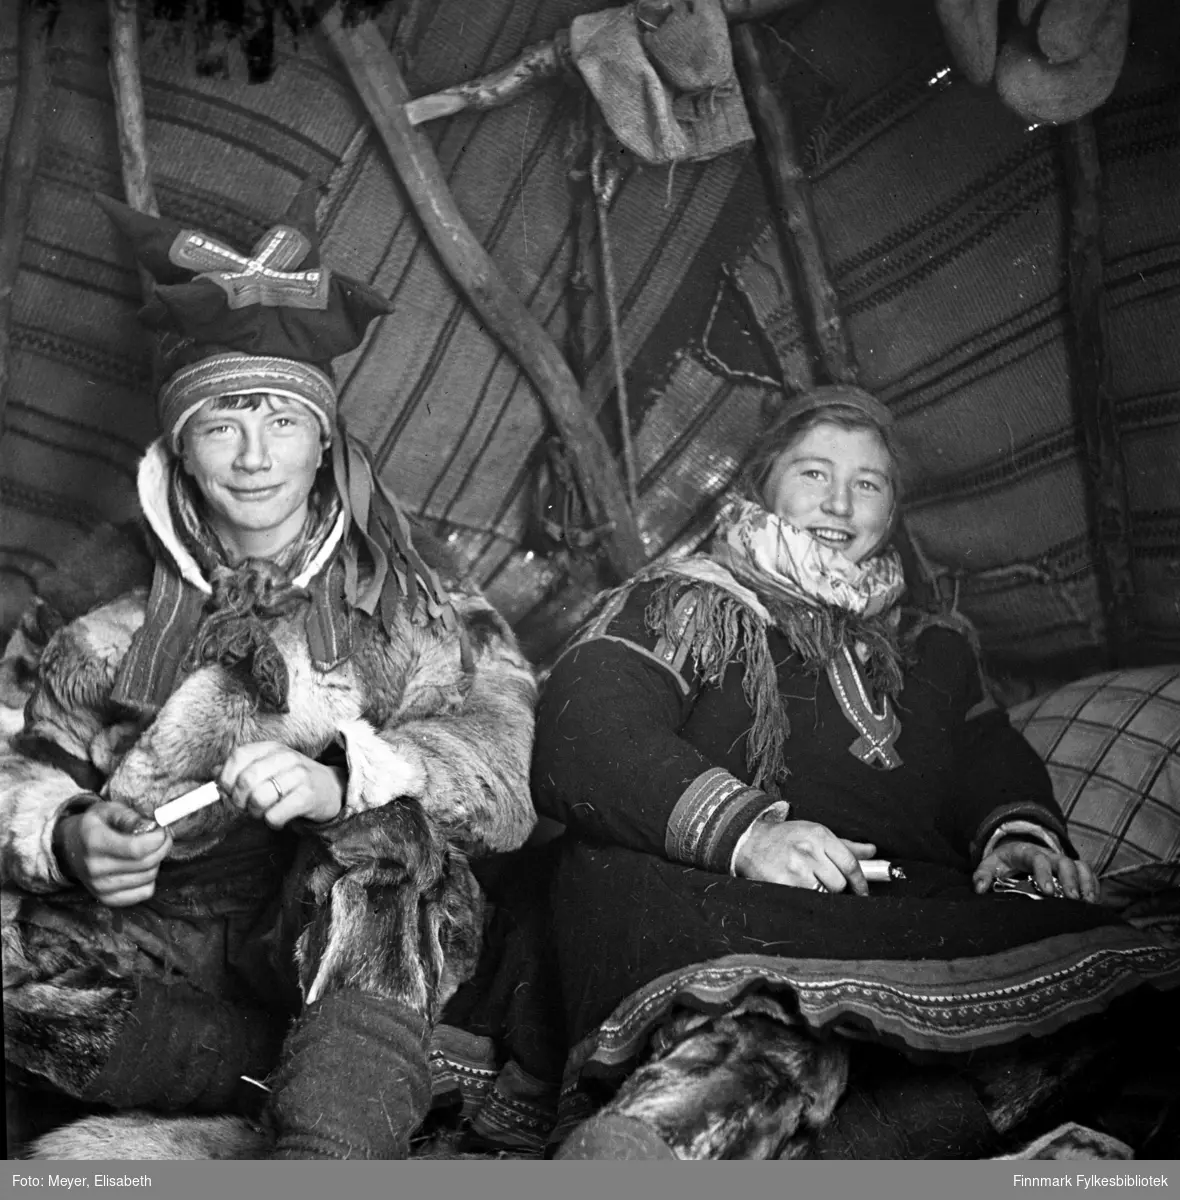 Søskenparet Mathis Johansen Sara og Inga Johansdatter Sara fotografert inne i lavvoen. Fotografert i Kautokeino i periden 1939-40. Begge er kledd i samiske drakter. Mathis bærer samisk lue, pesk og har skaller og skallebånd på beina. Inga har samisk kofte og lue med sjal i halsen. Et liknende bilde ble publisert i Nordmannsforbundets julehefte 1950 og Magasinet for alle nr. 13, 29.mars 1961.